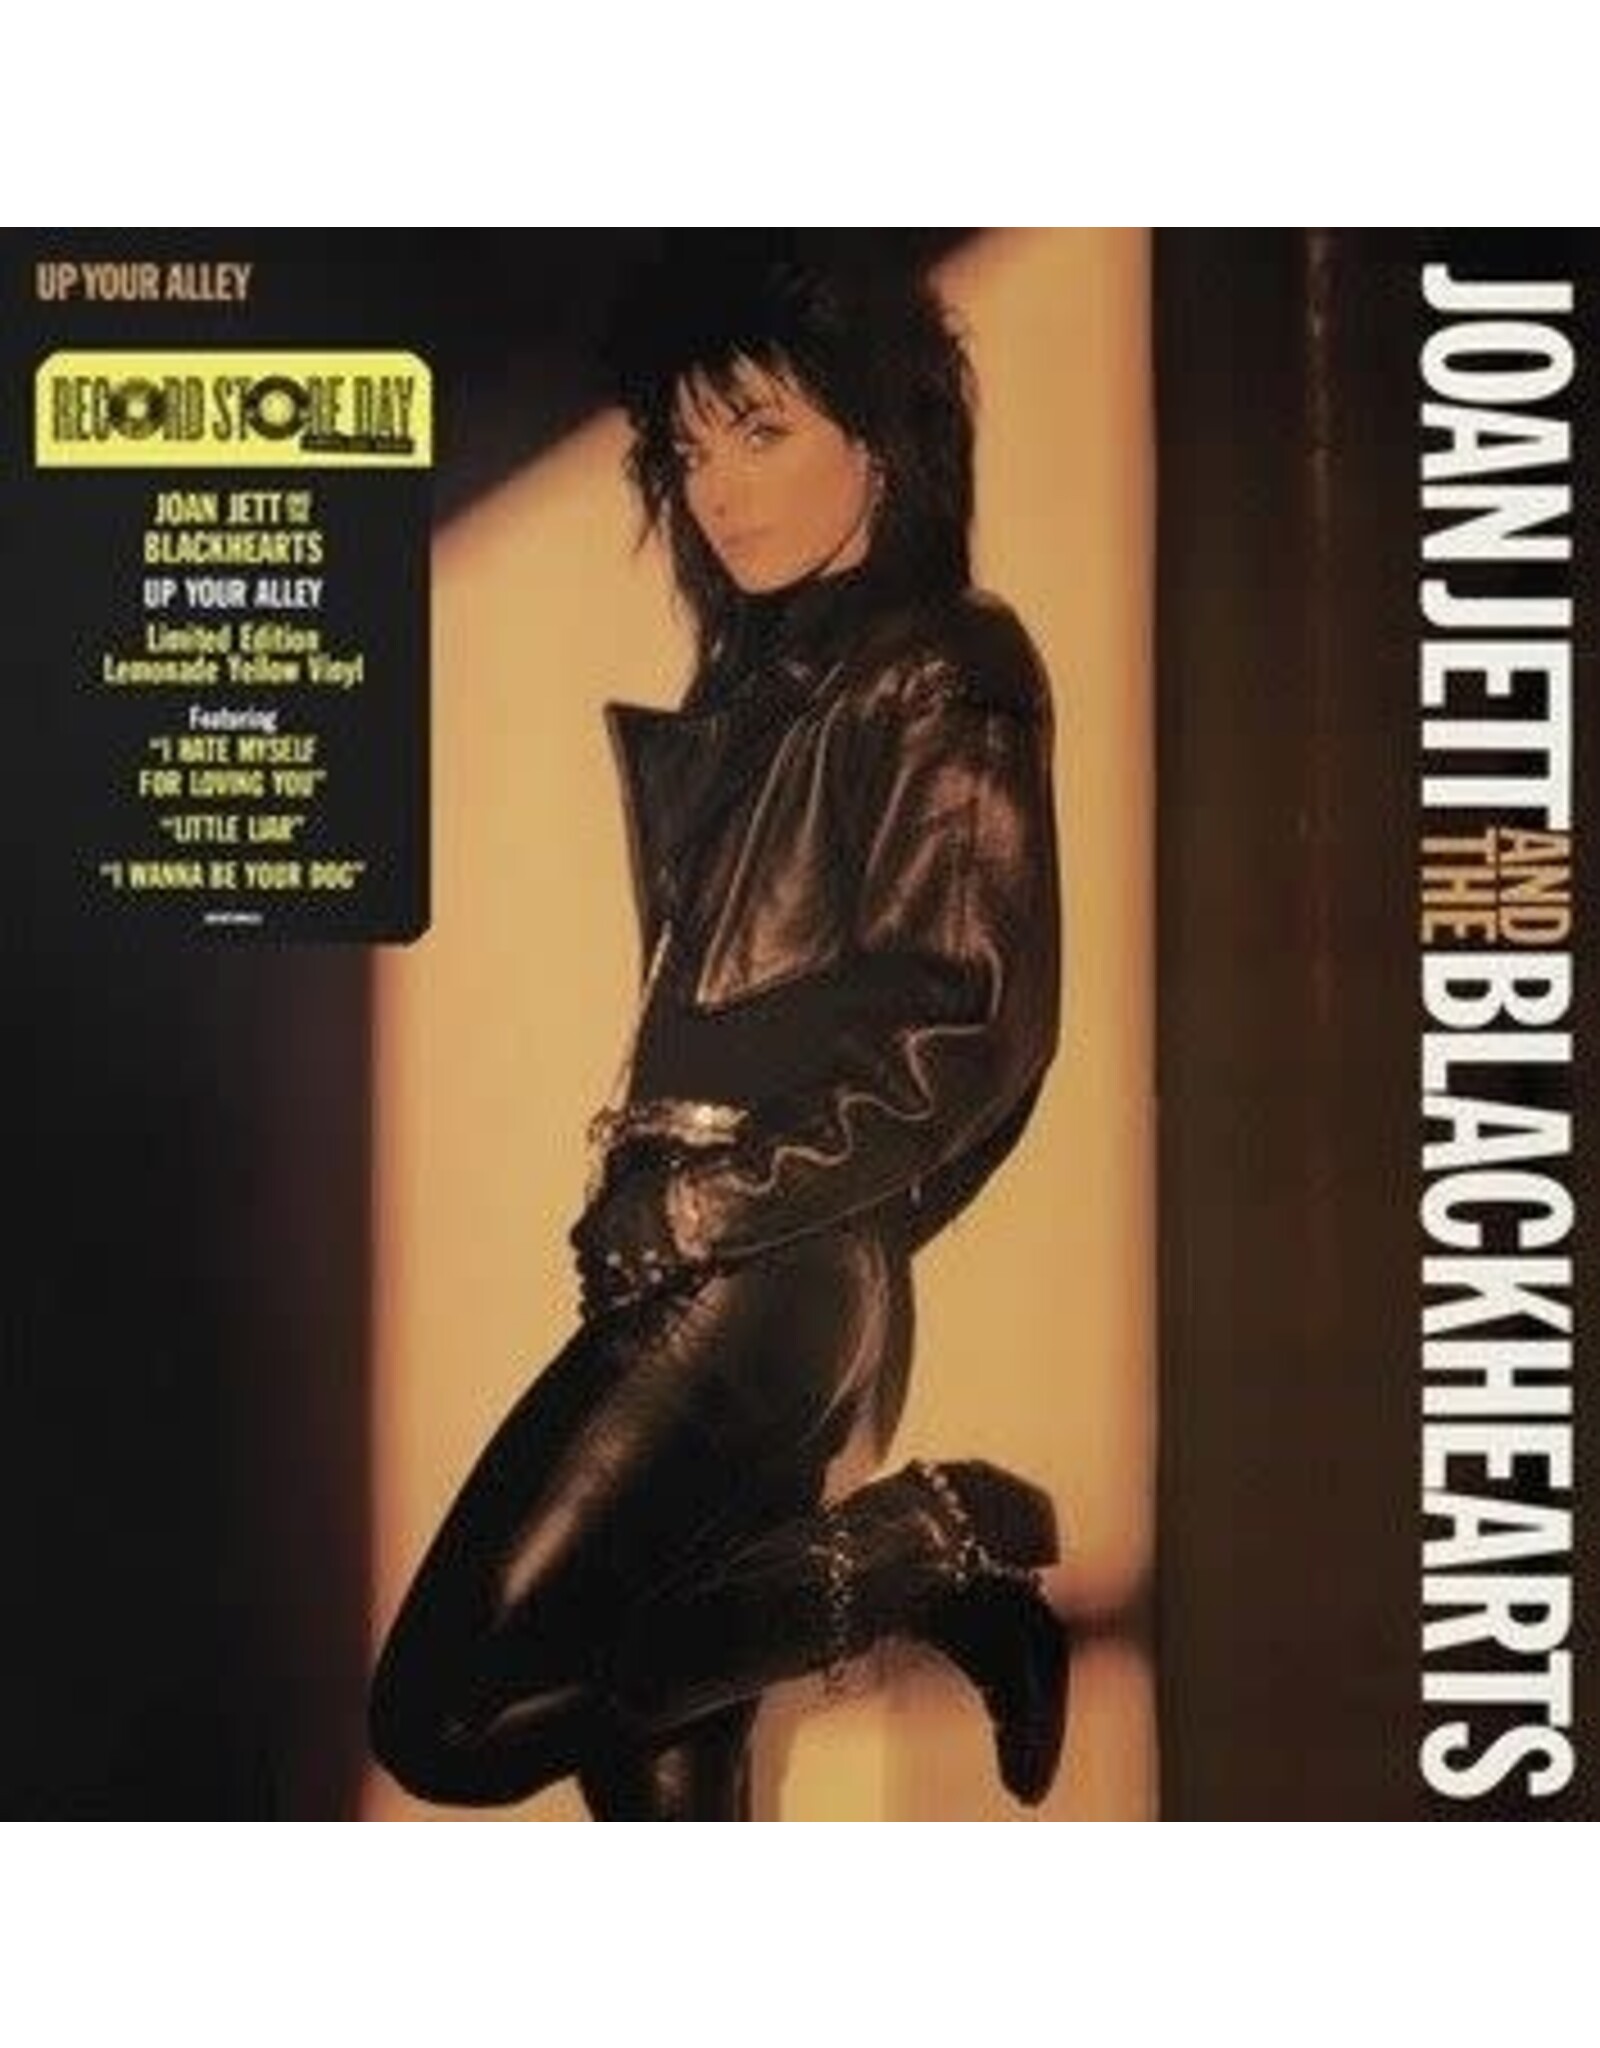 Jett, Joan and the Blackhearts - Up Your Alley (Lemonade Lemon Vinyl) LP